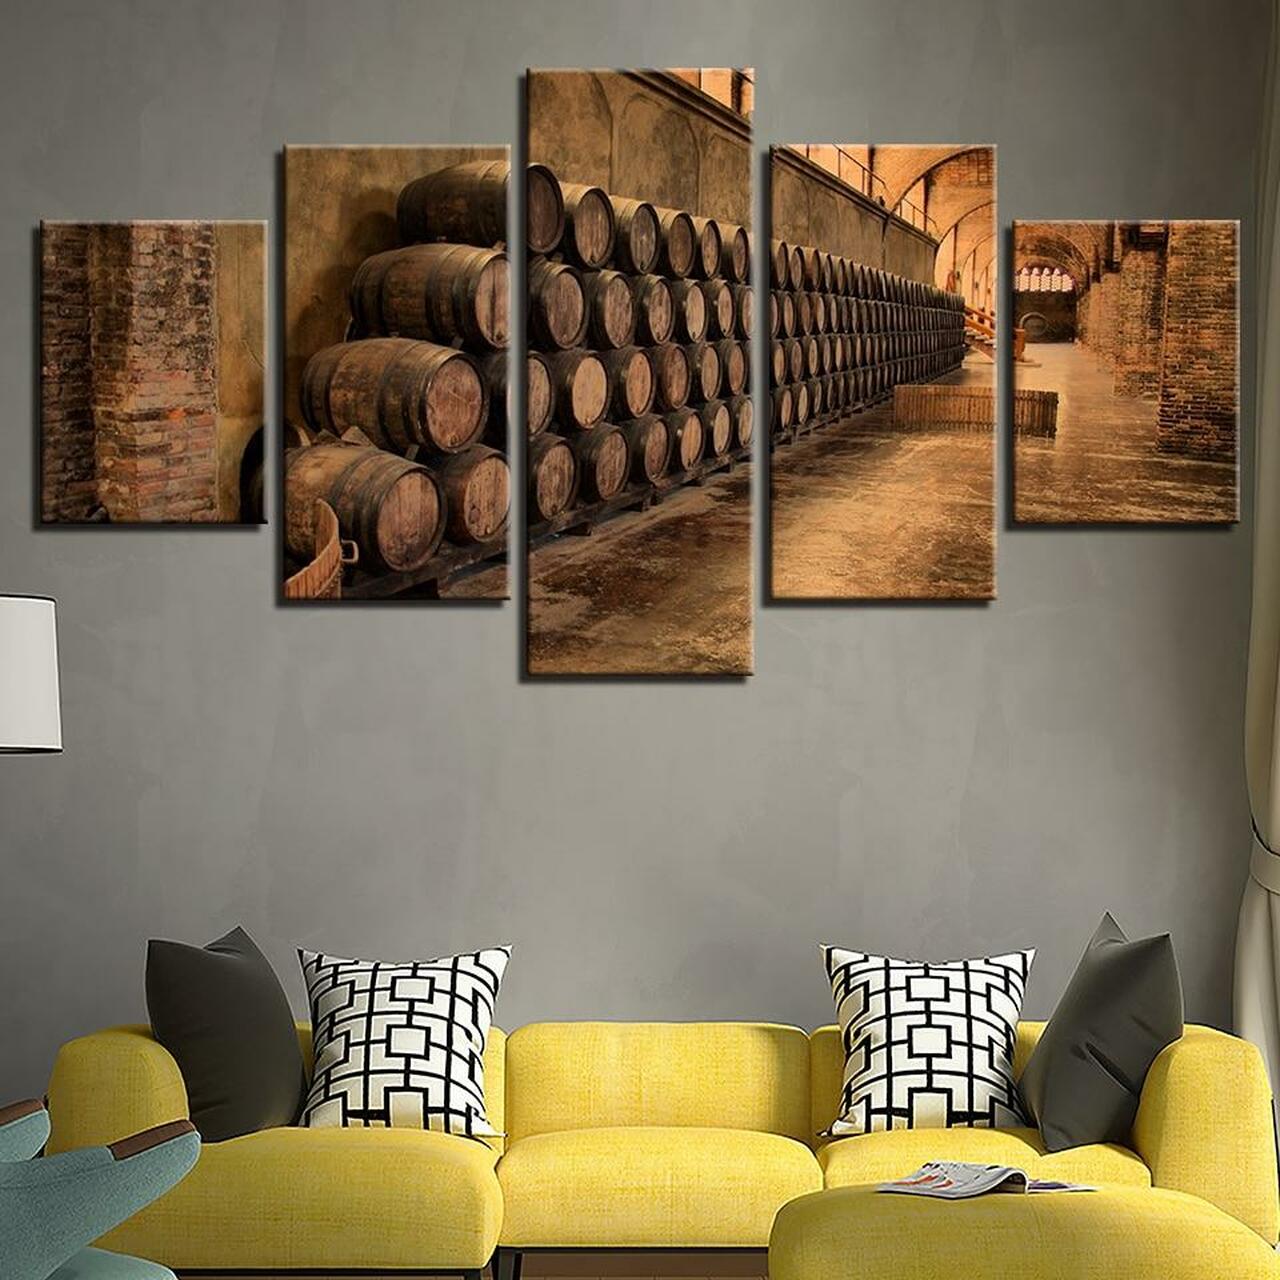 barrels of wine 5 pices peinture sur toile impression sur toile toile art pour la dcoration intrieureynr0m